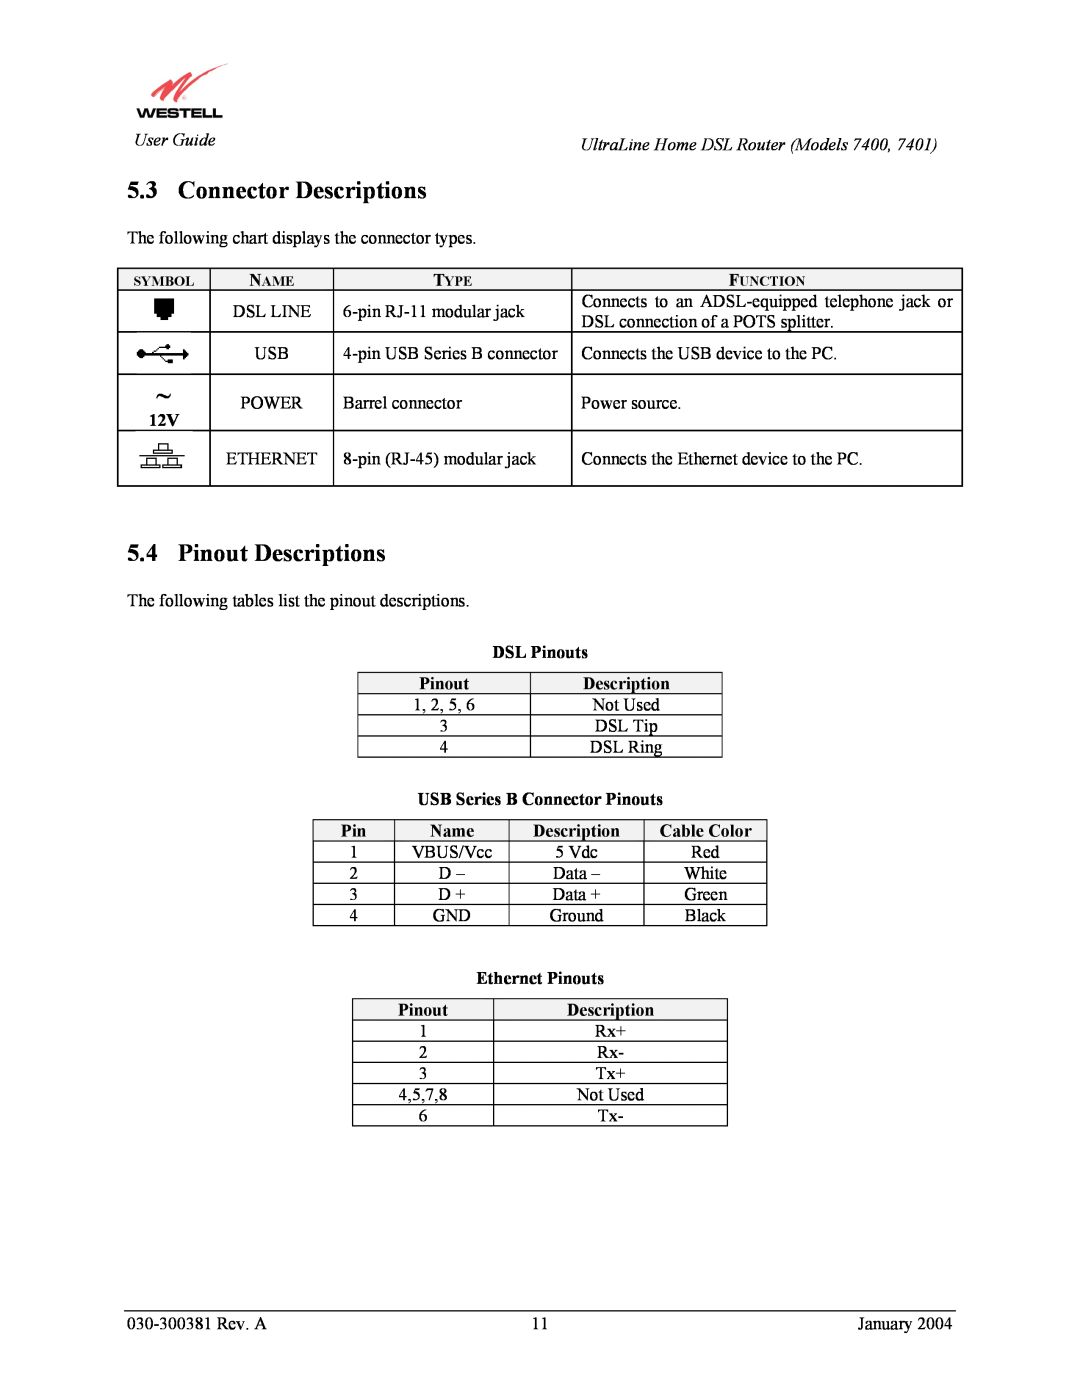 Westell Technologies 7400, 7401 manual Connector Descriptions, Pinout Descriptions 